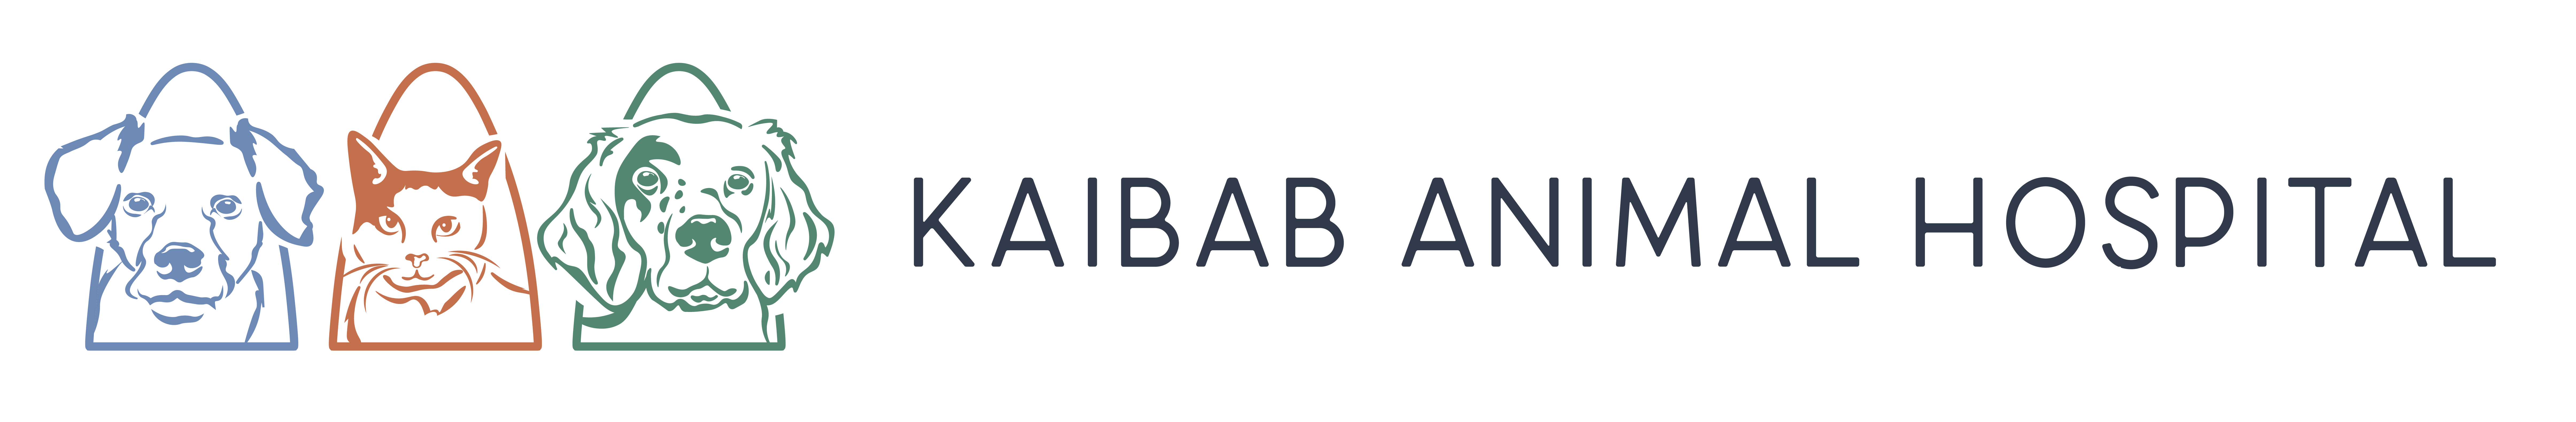 Kaibab Animal Hospital Logo